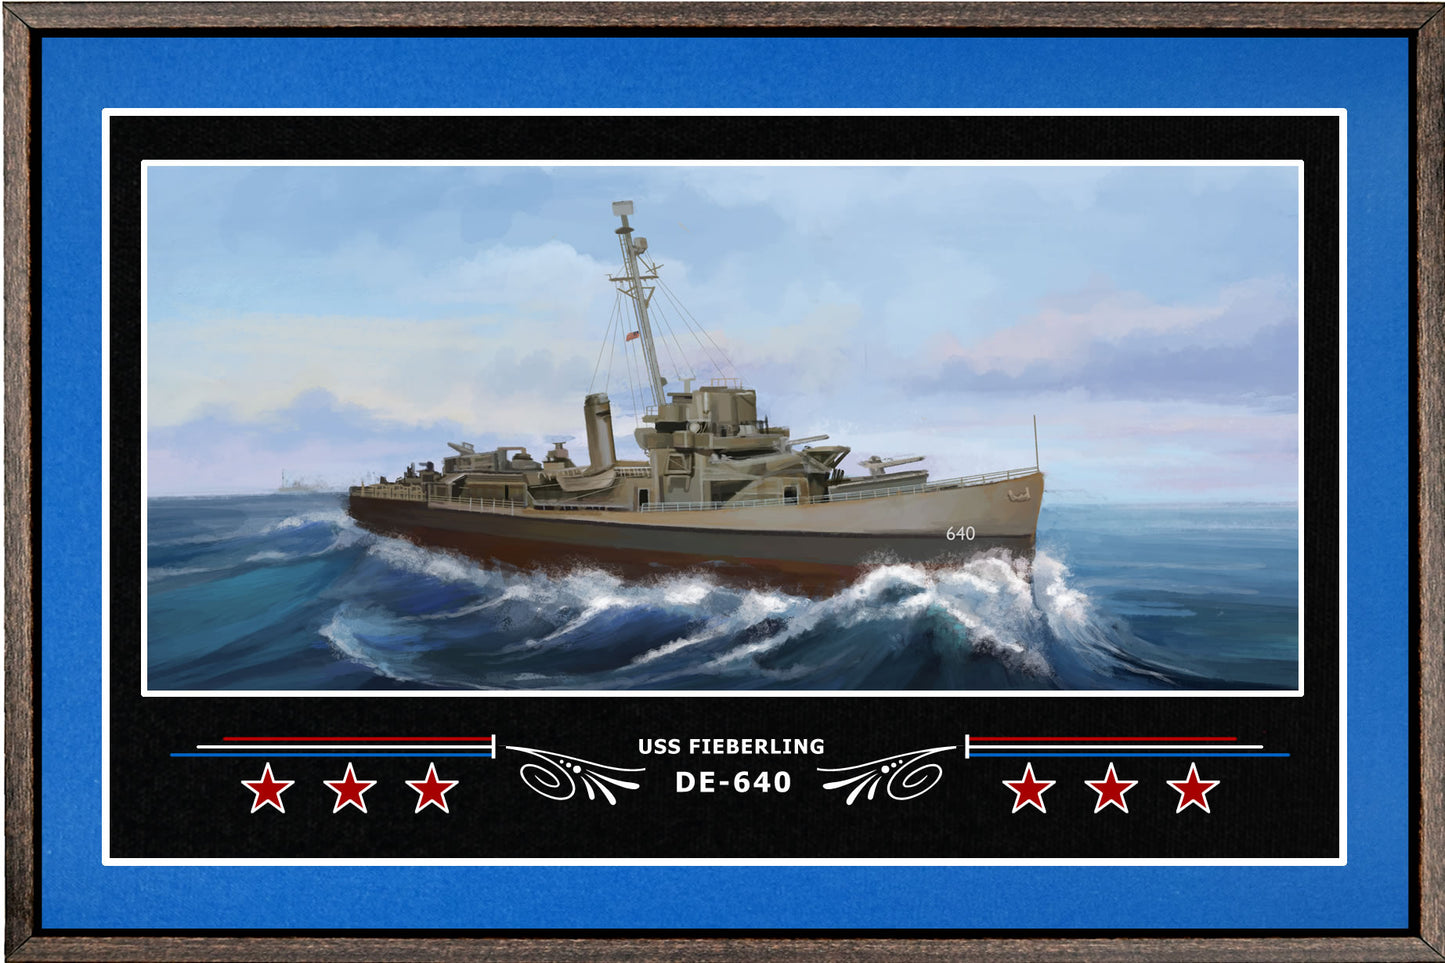 USS FIEBERLING DE 640 BOX FRAMED CANVAS ART BLUE